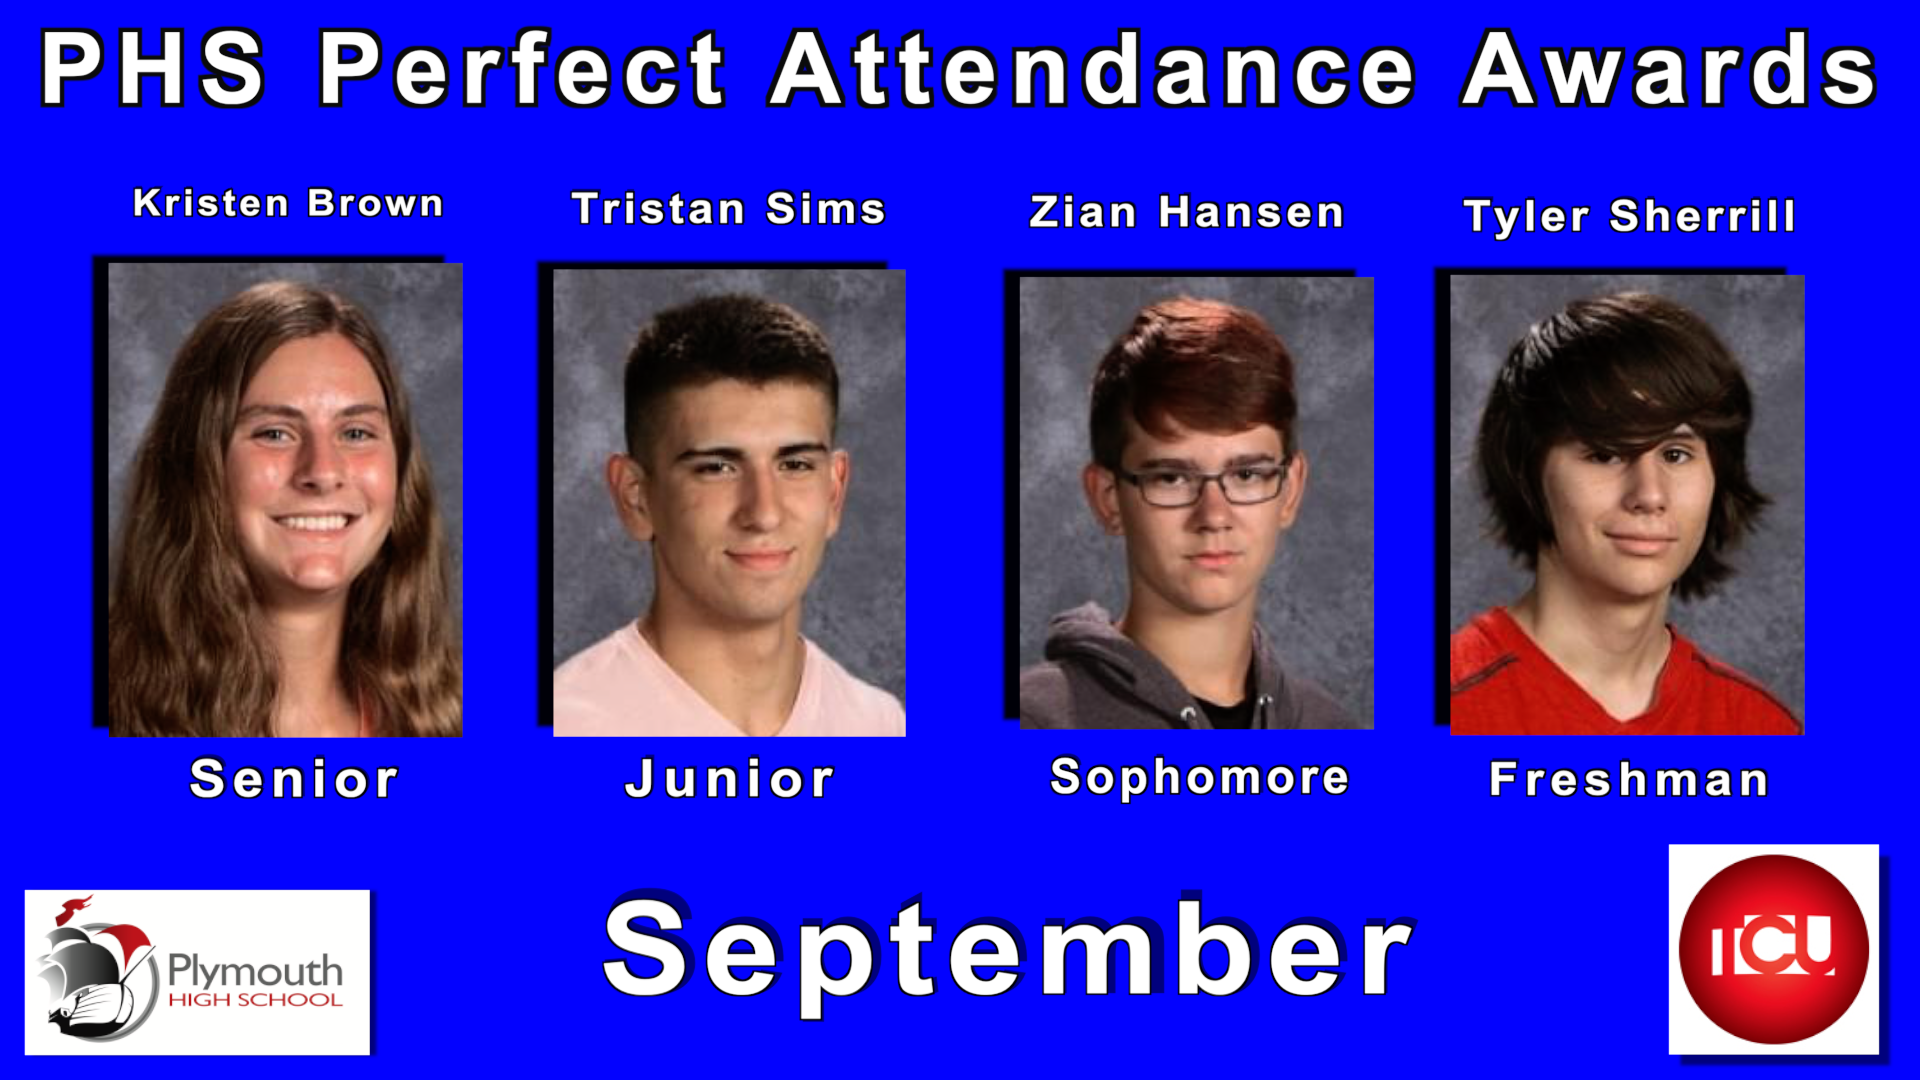 PHS Perfect Attendance Award Winners for September